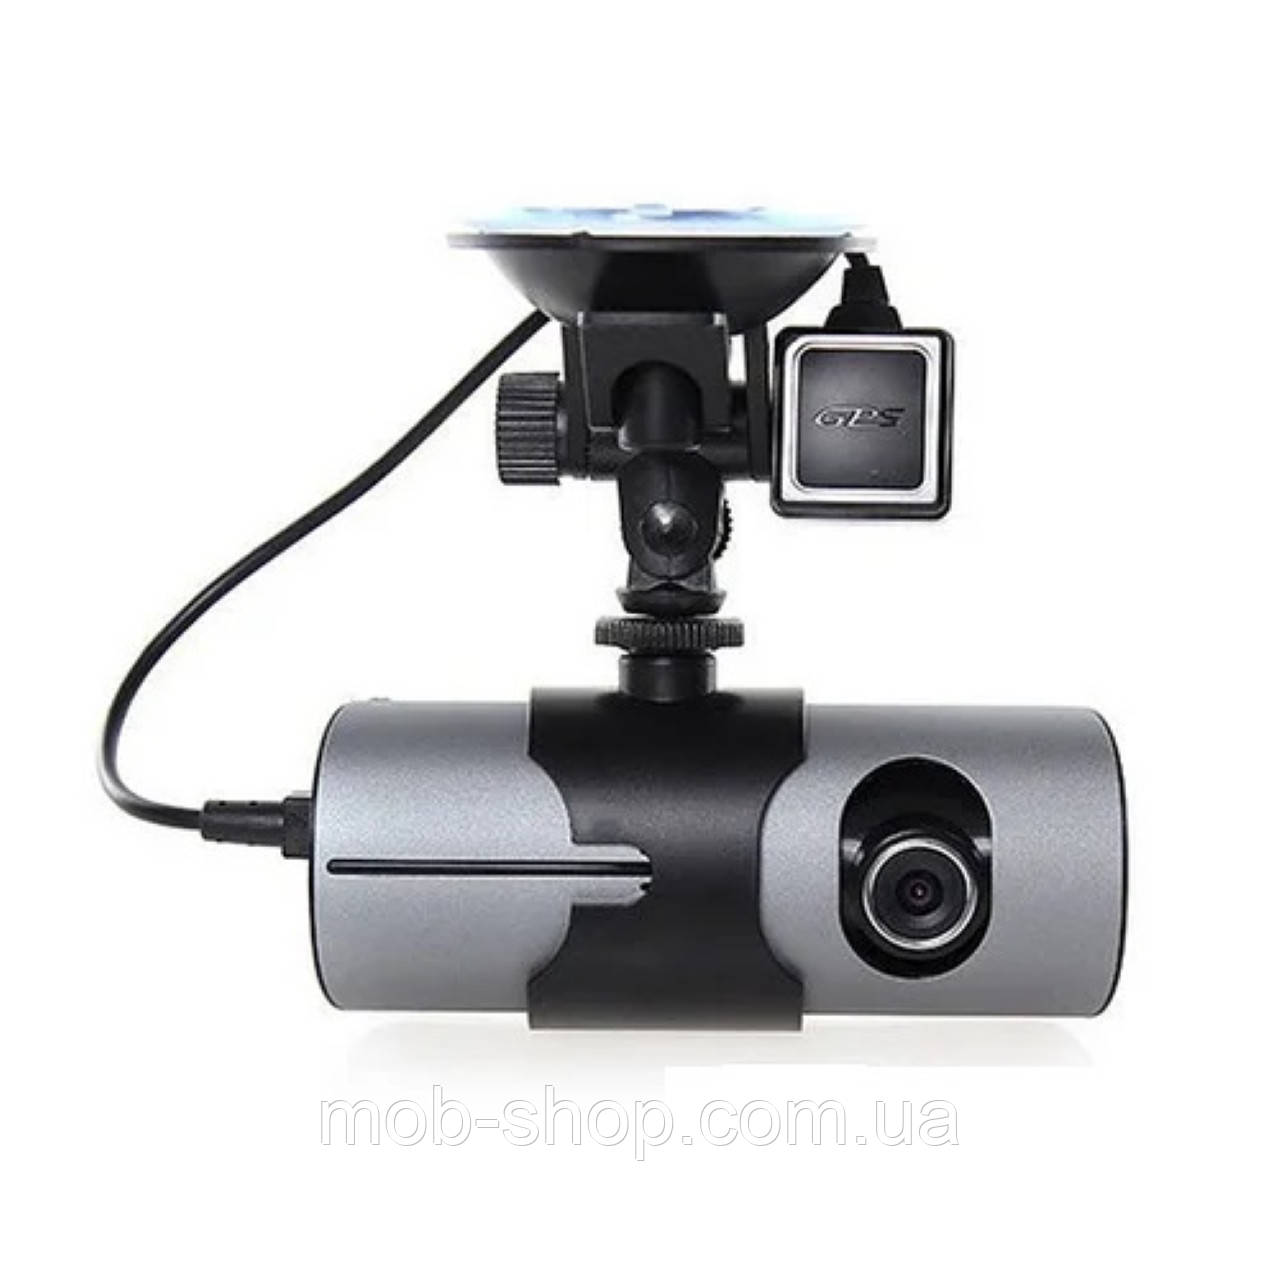 Автомобільний відеореєстратор з двома камерами Car DVR R300 відео реєстратор з GPS навігацією